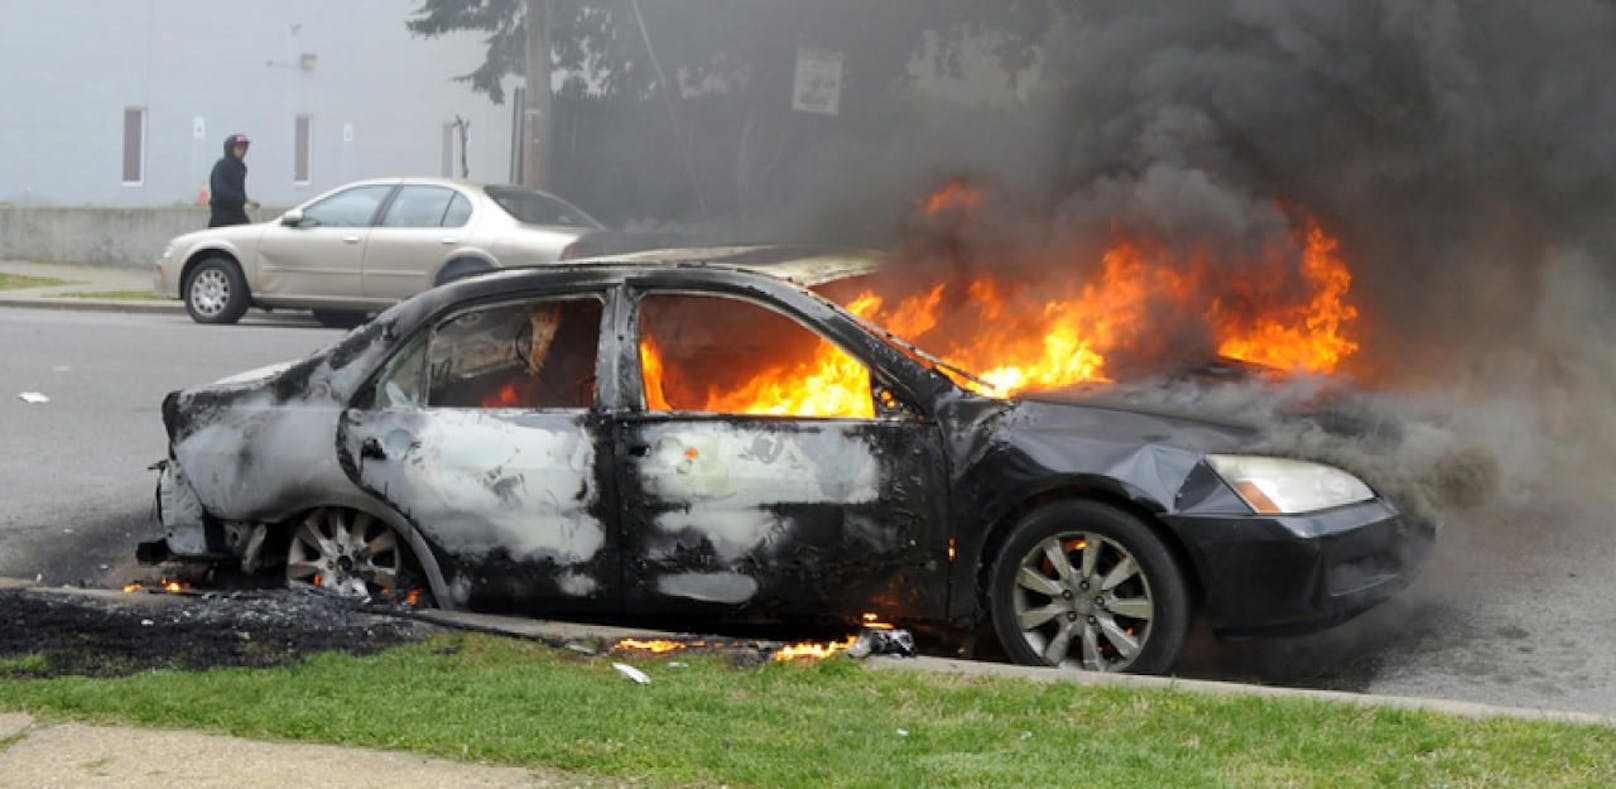 Ein Jugendlicher stieg in einen Wagen, obwohl dieser brannte, und fuhr damit weiter. (Symbolbild)